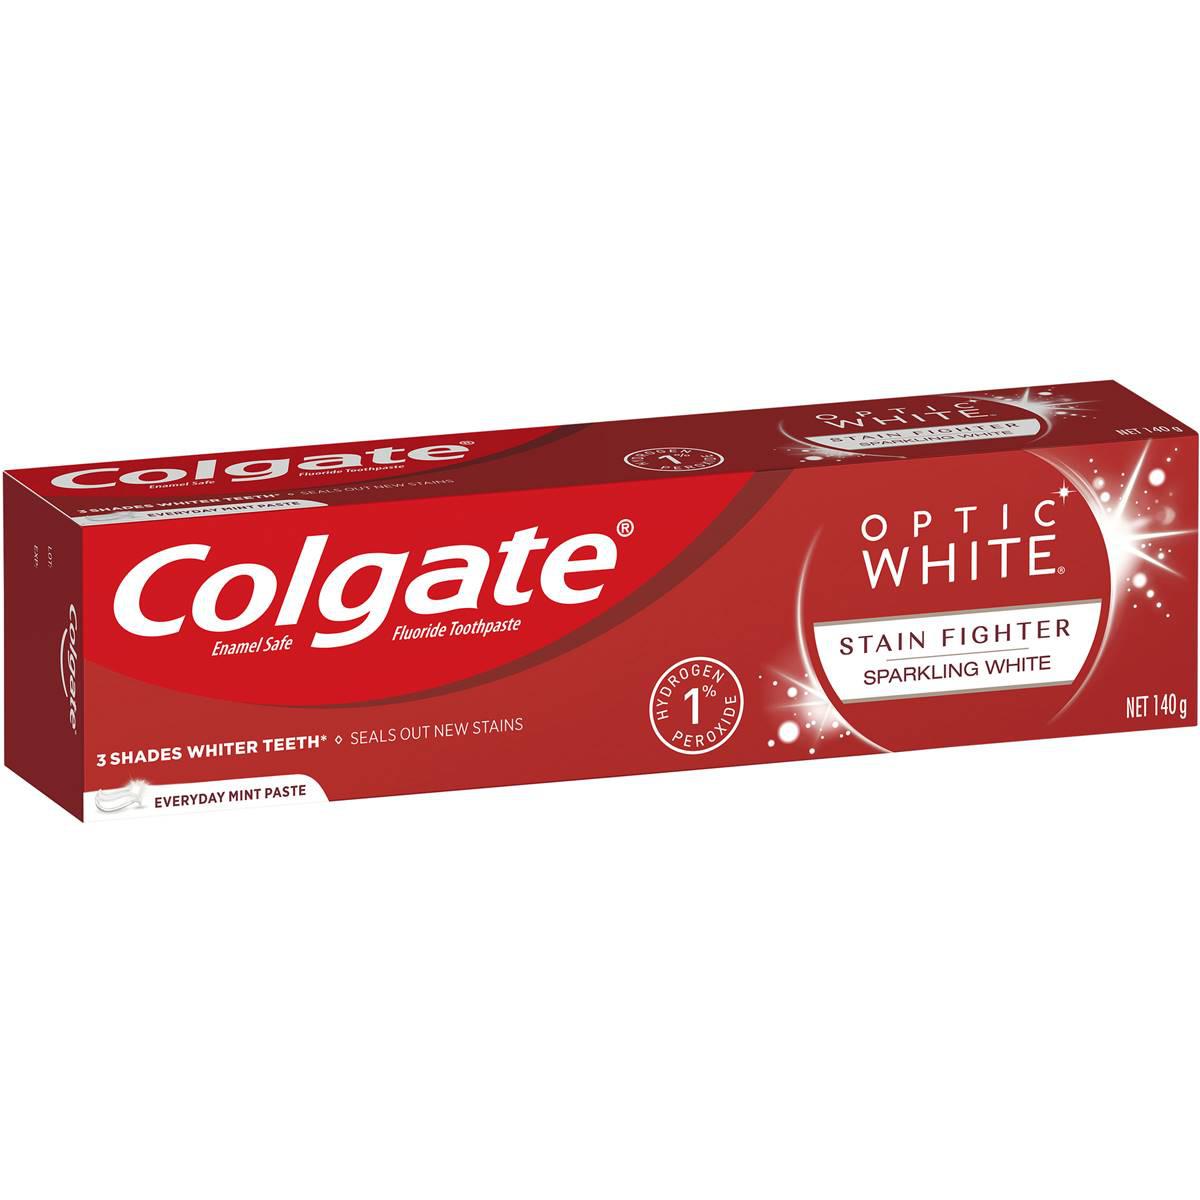 Colgate Optic White Sparkling White Teeth Whitening Toothpaste 140g